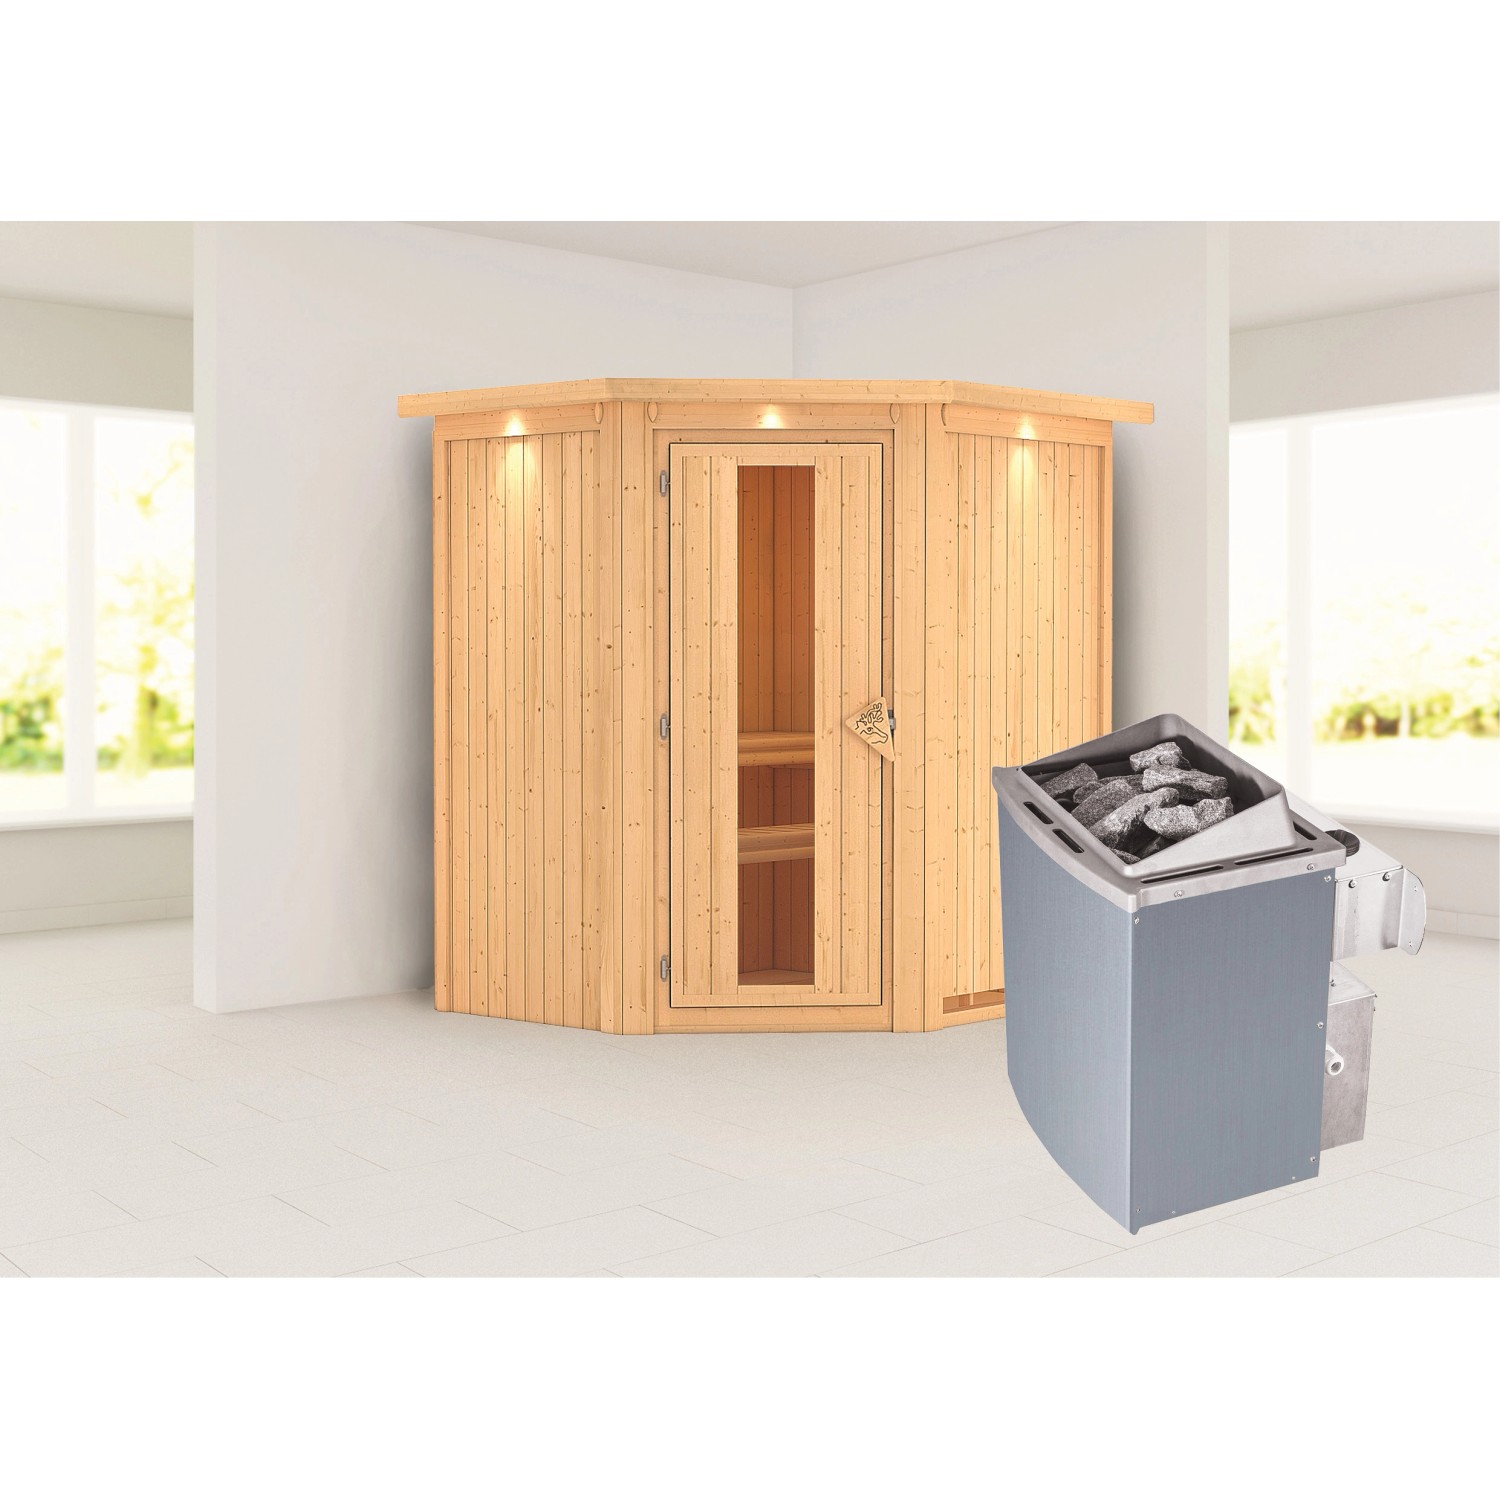 Karibu Sauna Tjorven + Ofen eing. Steuerung, Holz-Glastür, LED-Dachkranz günstig online kaufen